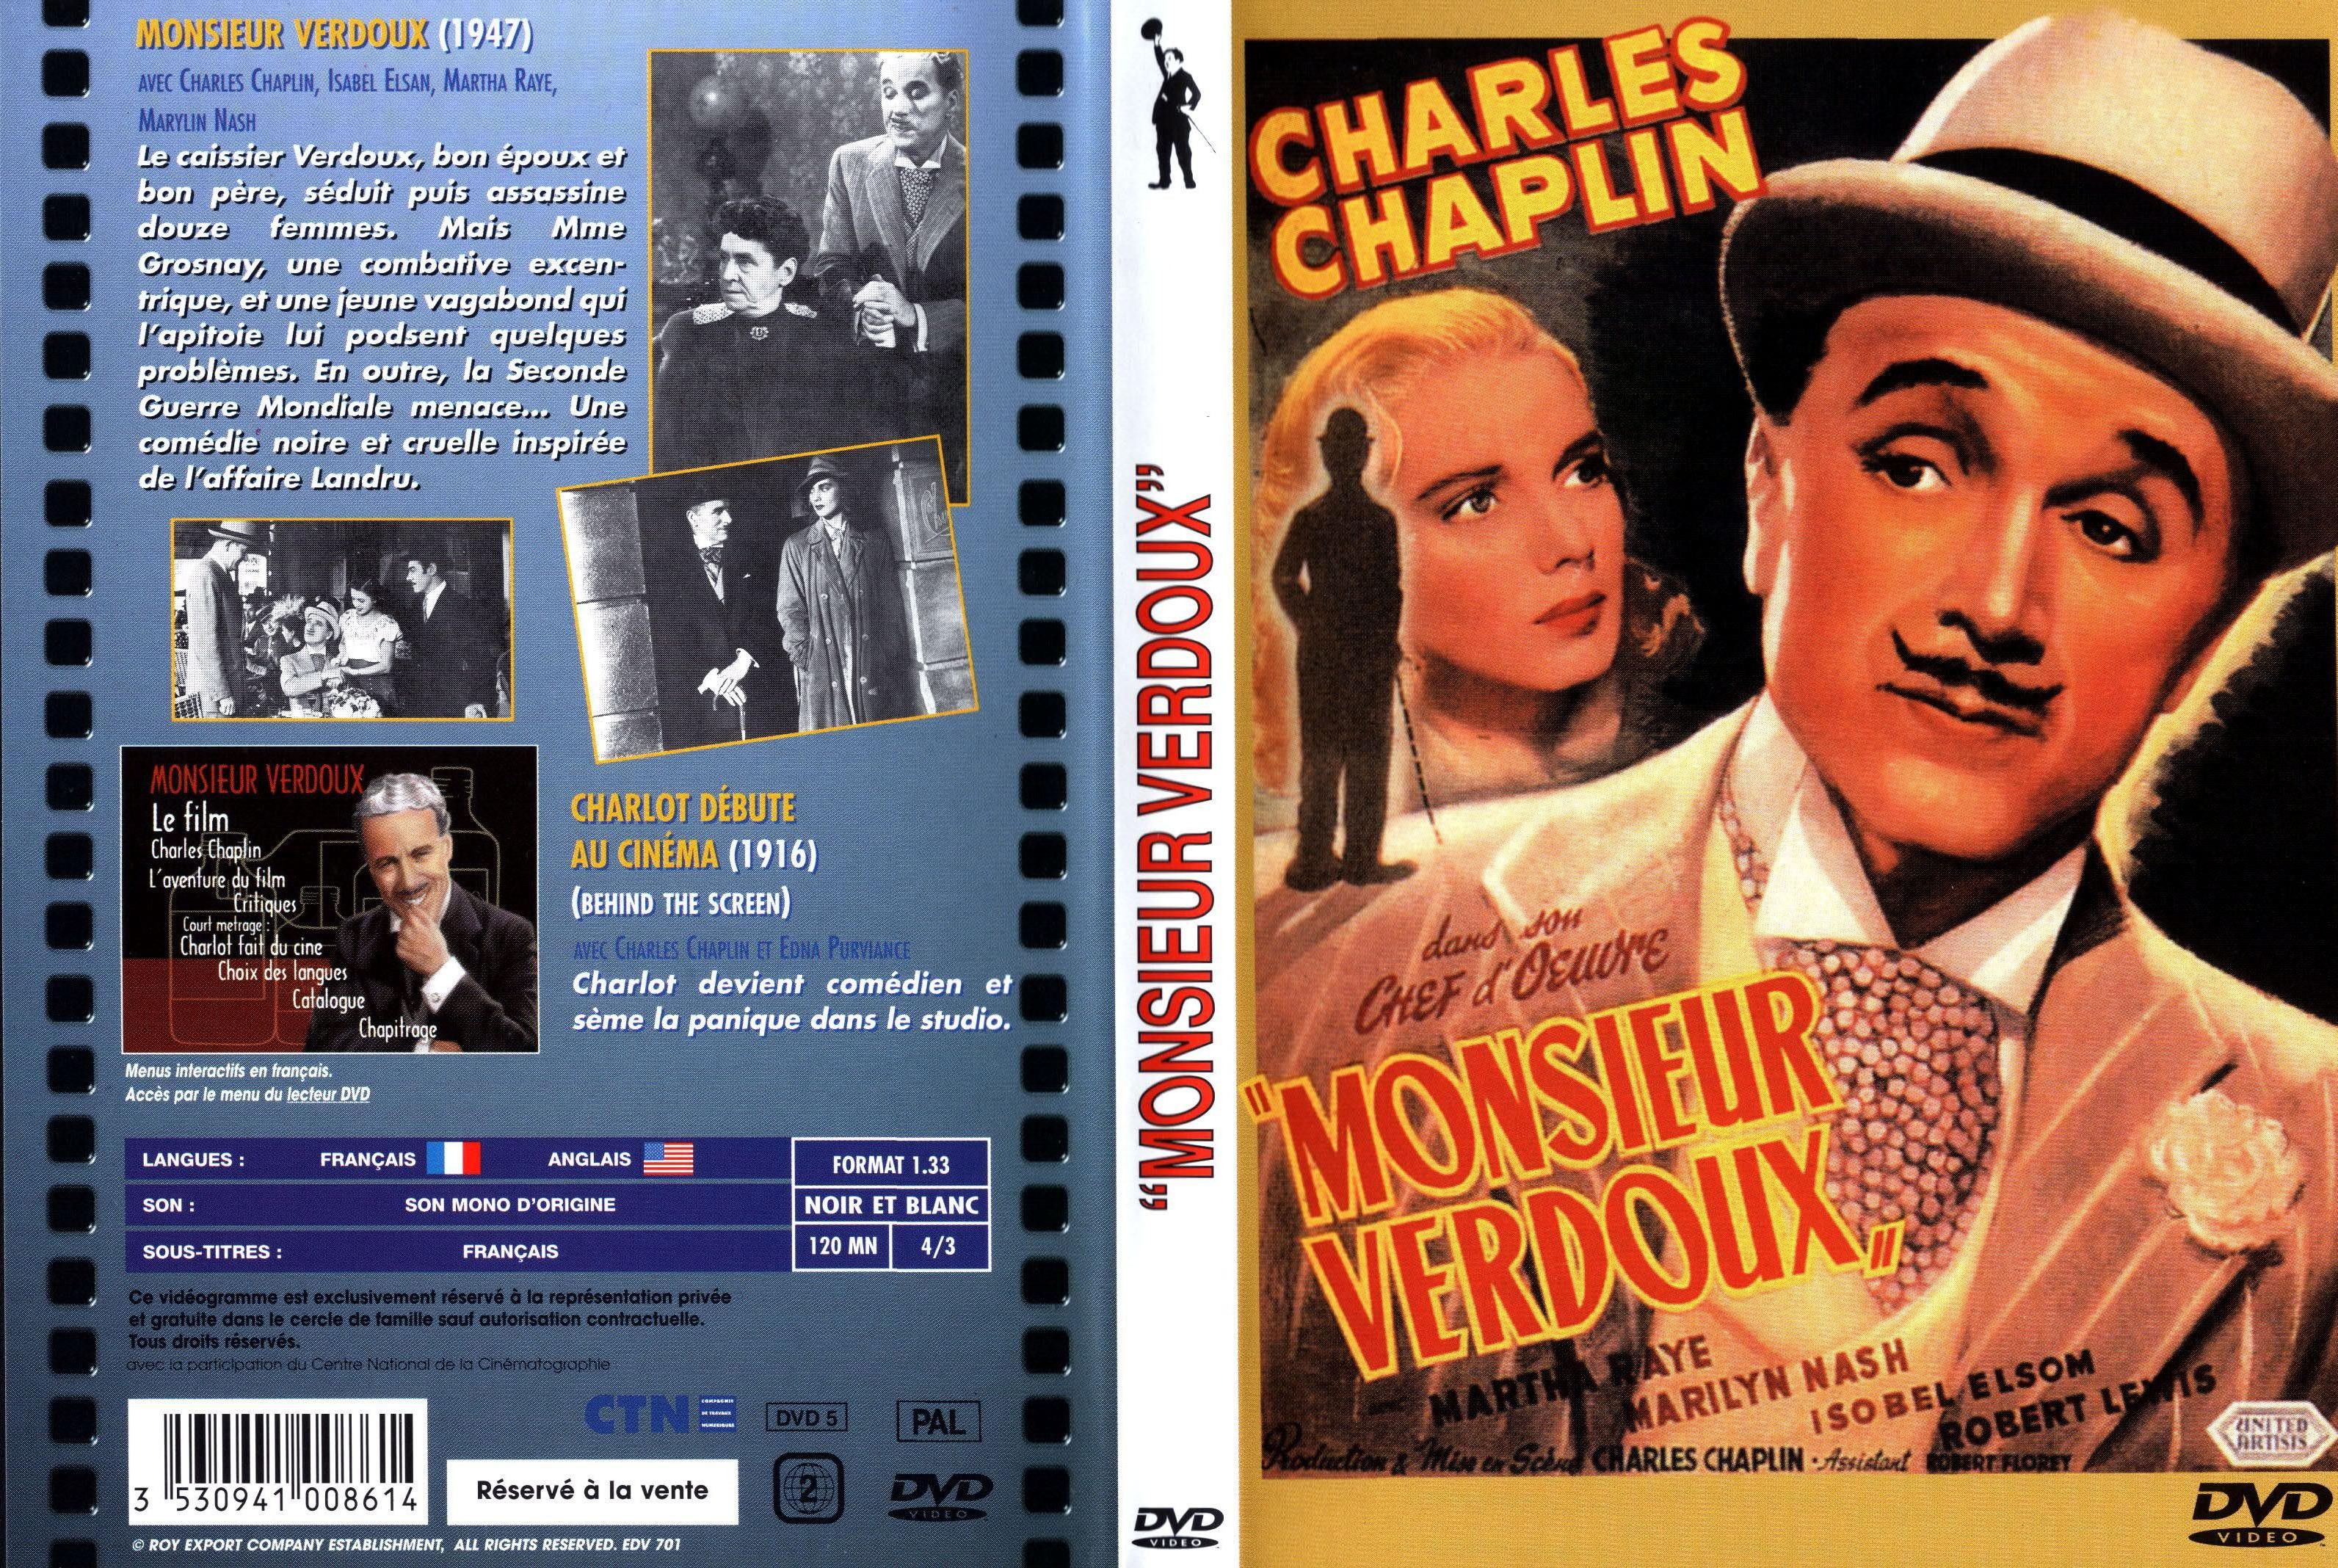 Jaquette DVD Monsieur Verdoux